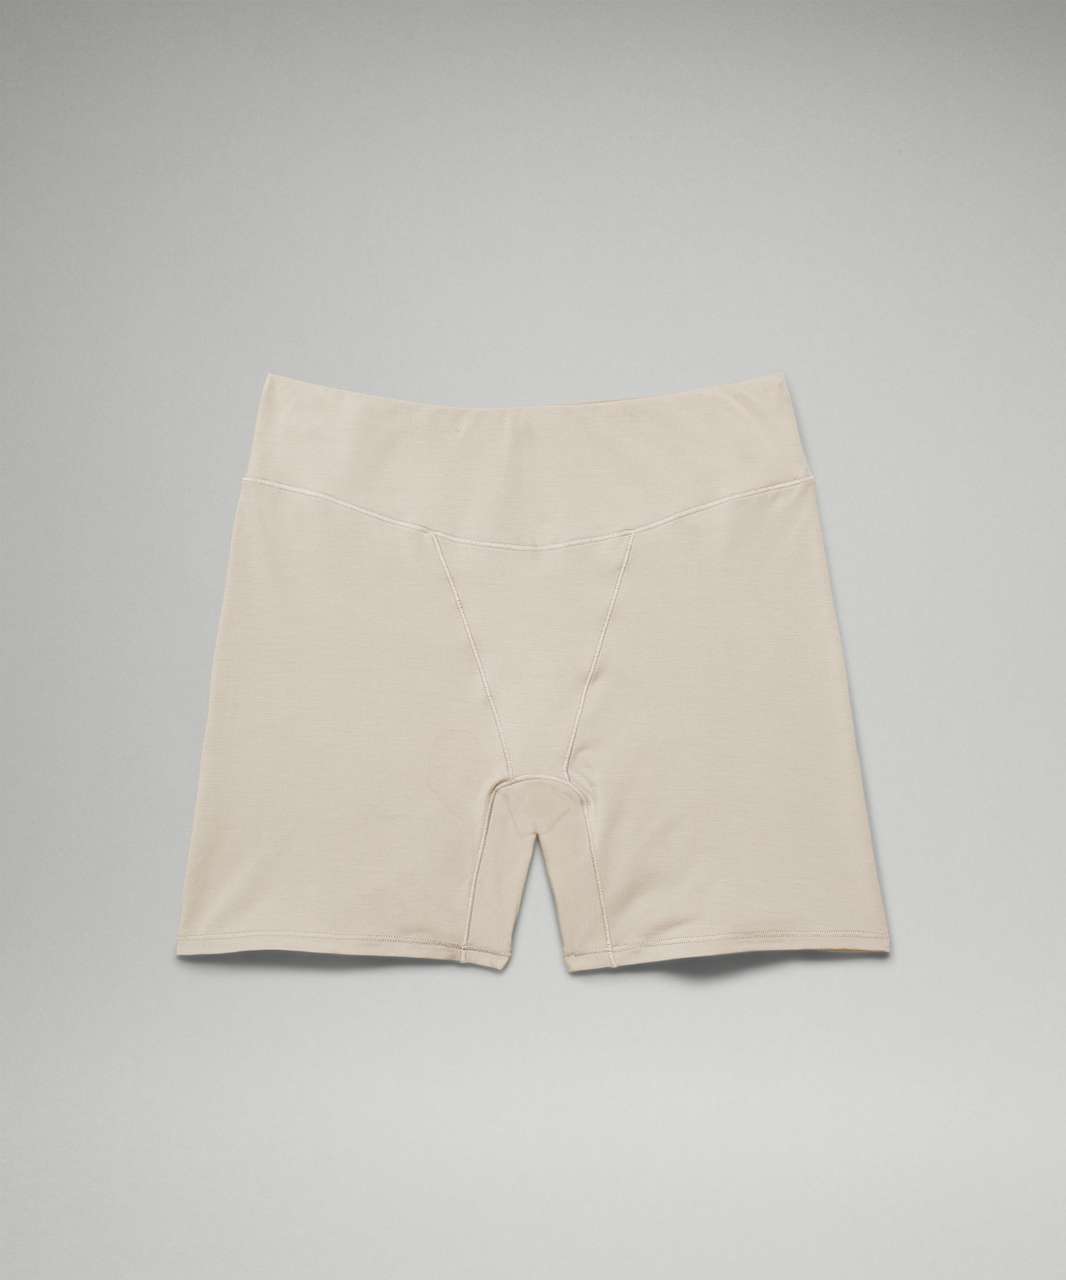 Lululemon UnderEase Super-High-Rise Shortie Underwear - Raw Linen